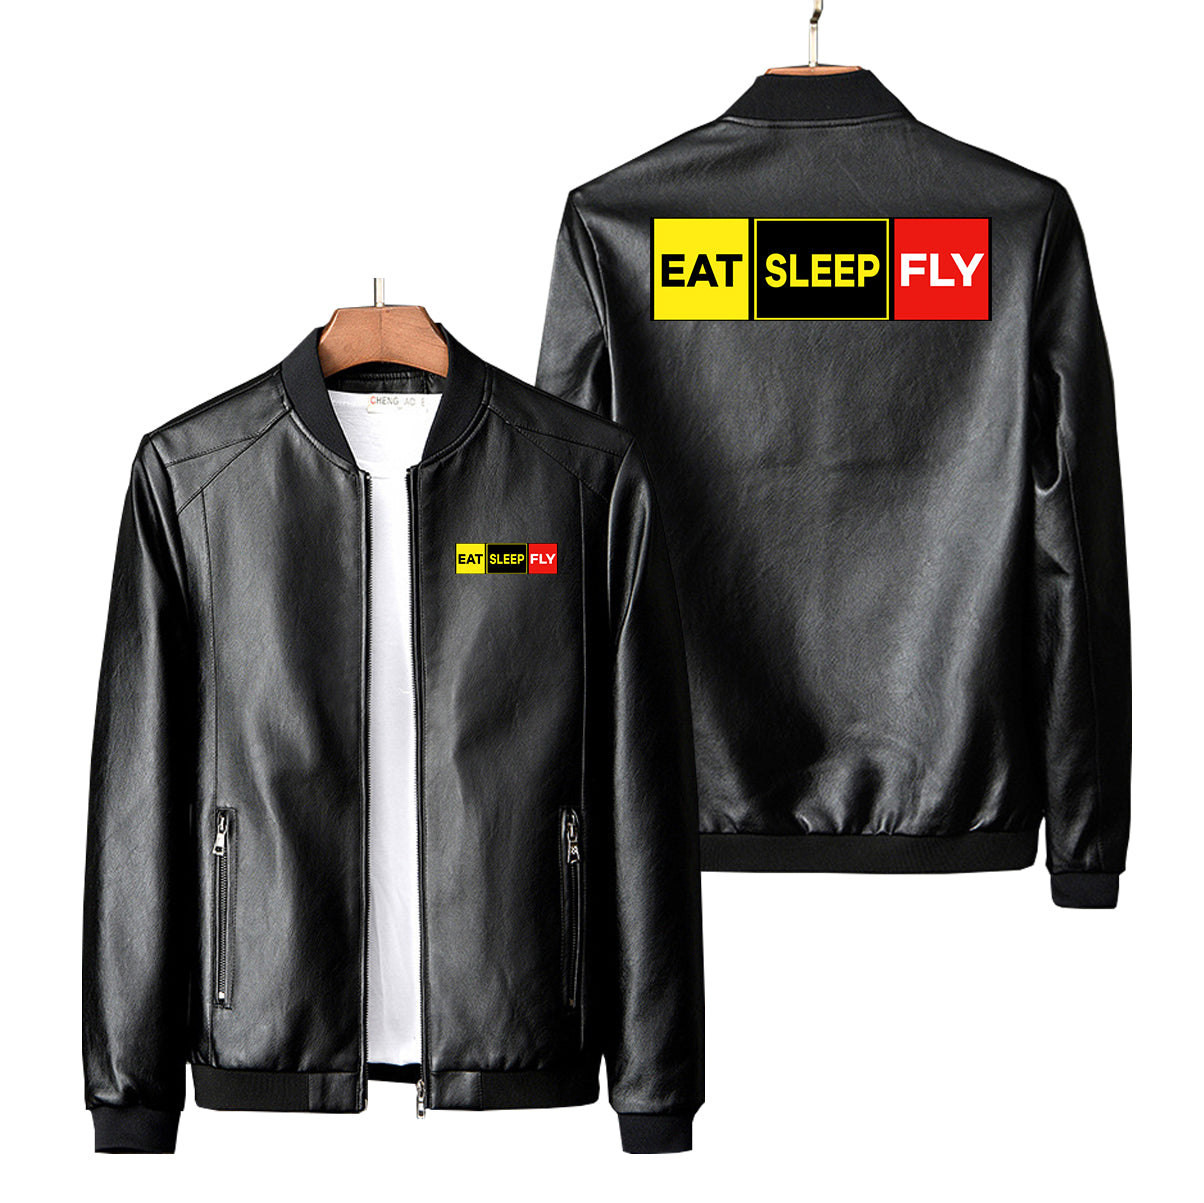 Eat Sleep Fly (Colourful) Designed PU Leather Jackets